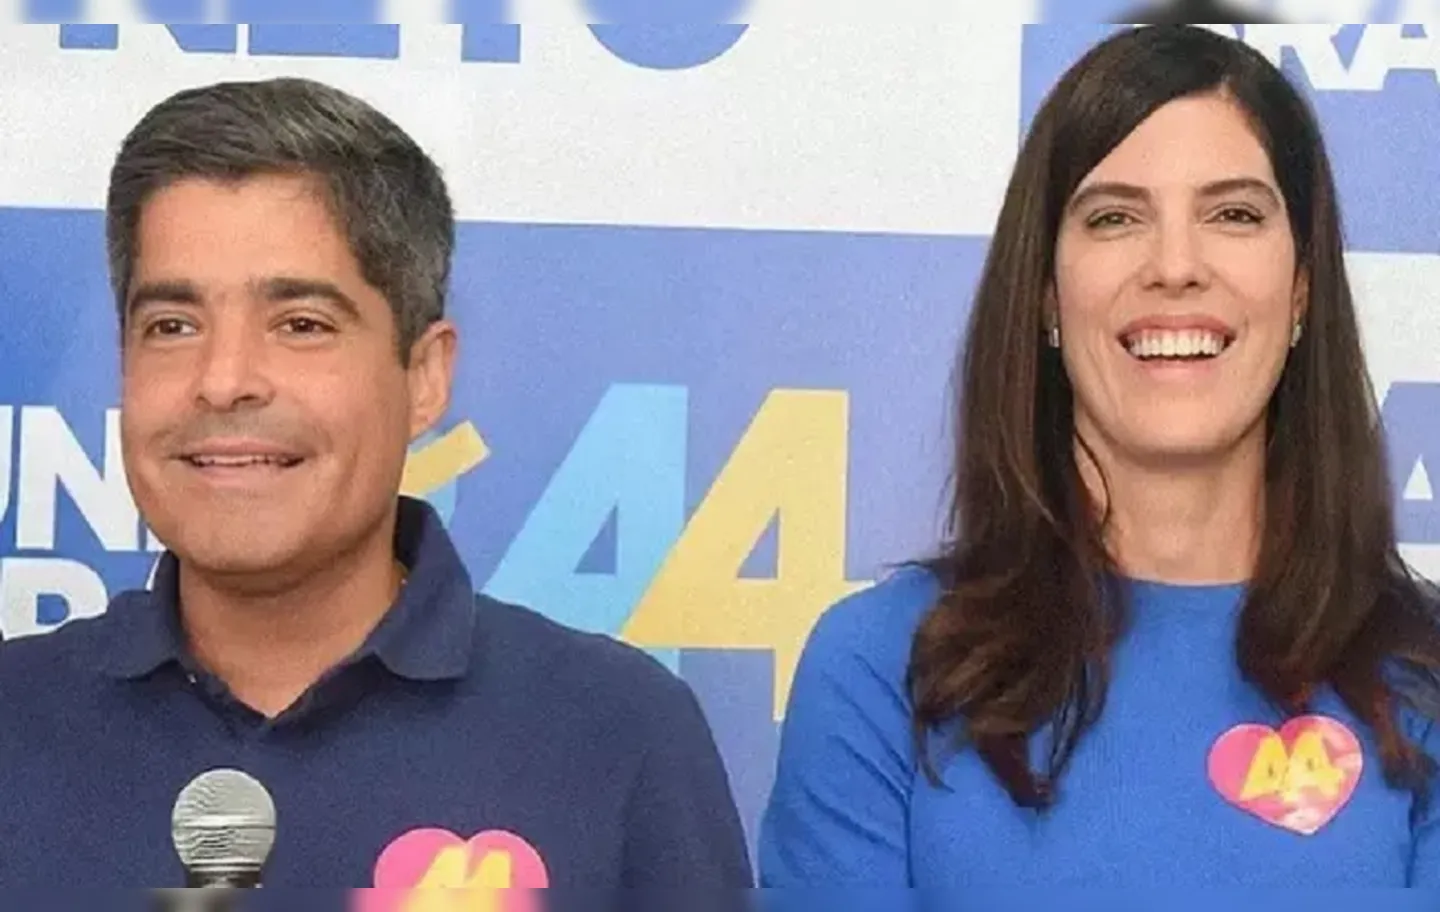 ACM Neto e Ana Coelho estão sendo chamados por concorrentes de a "chapa dos herdeiros"